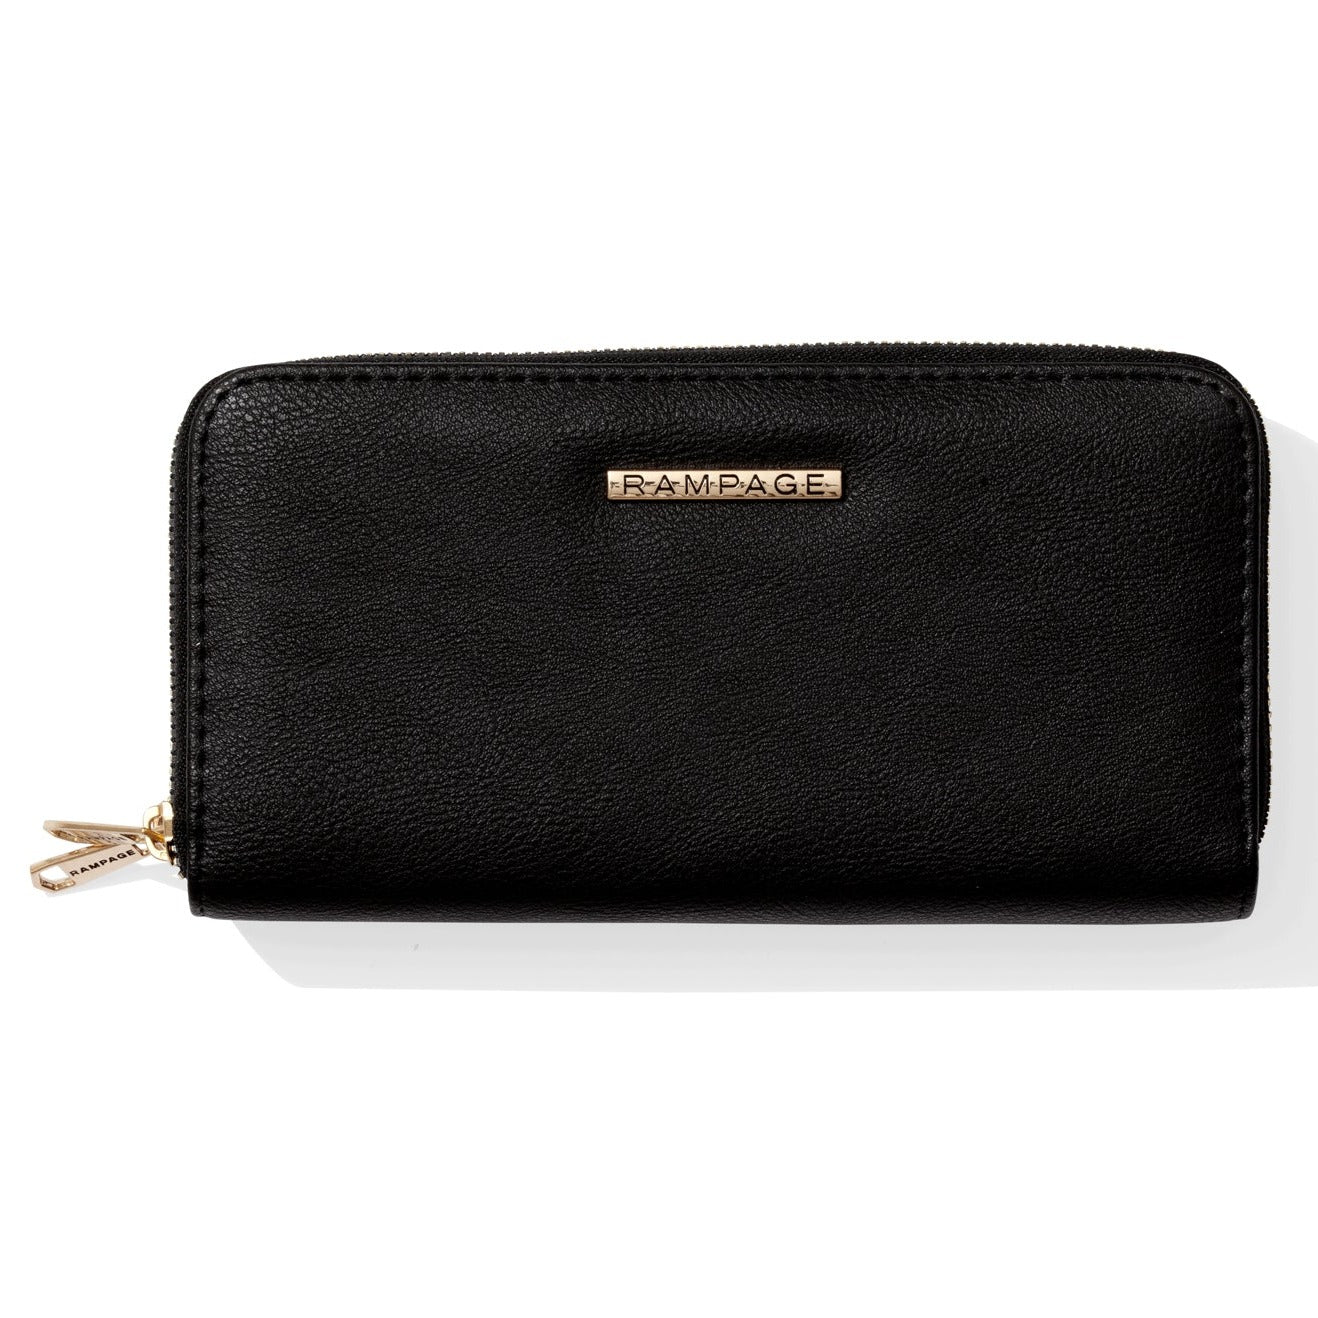 Black double zip wallet with gold zipper